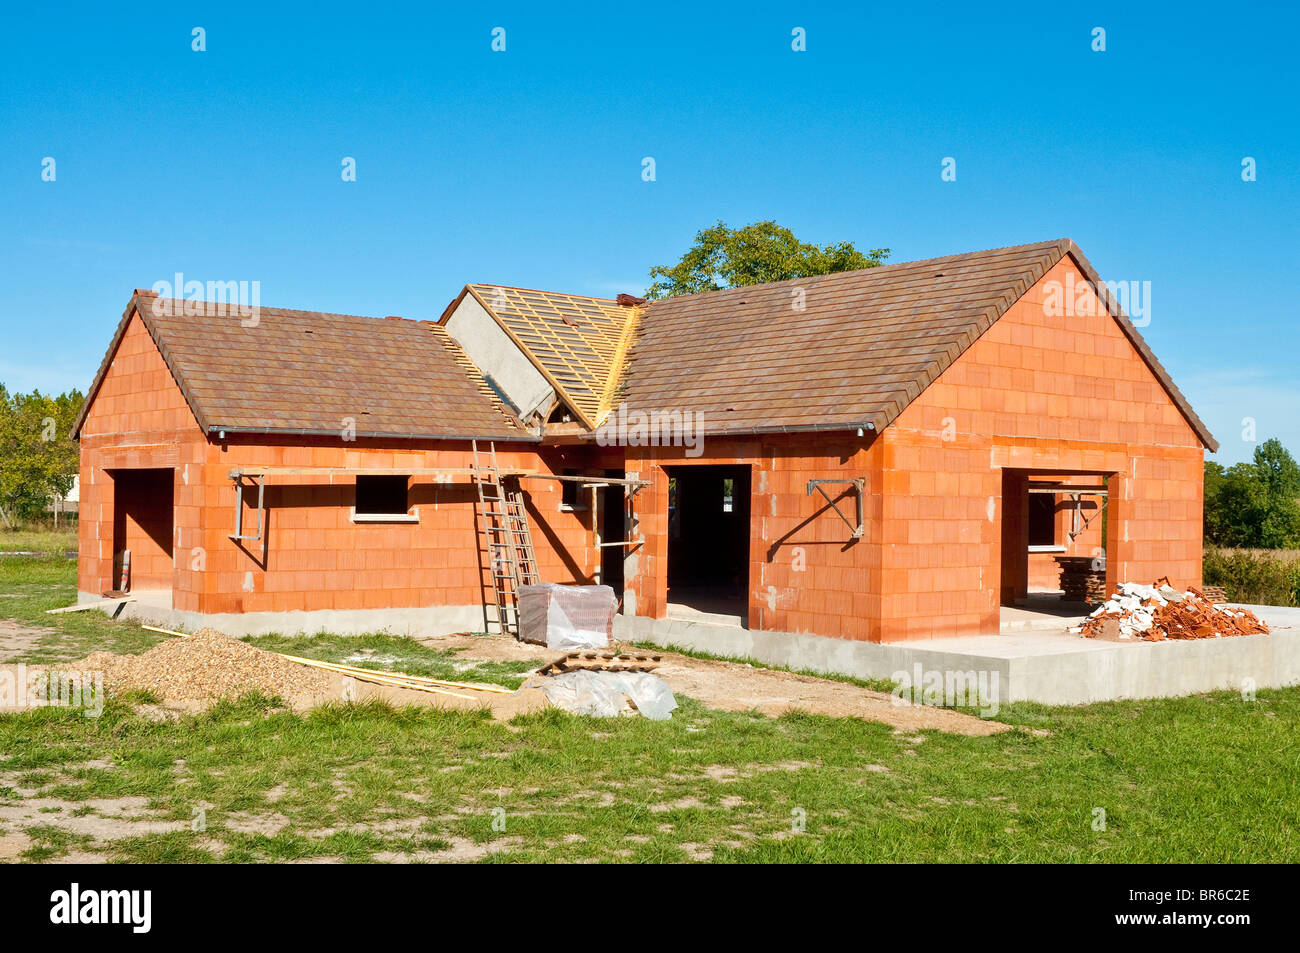 Nouvelle construction de bungalows avec 'rouge' Imerys Toiture tuiles de toit couvrant - Indre-et-Loire, France. Banque D'Images